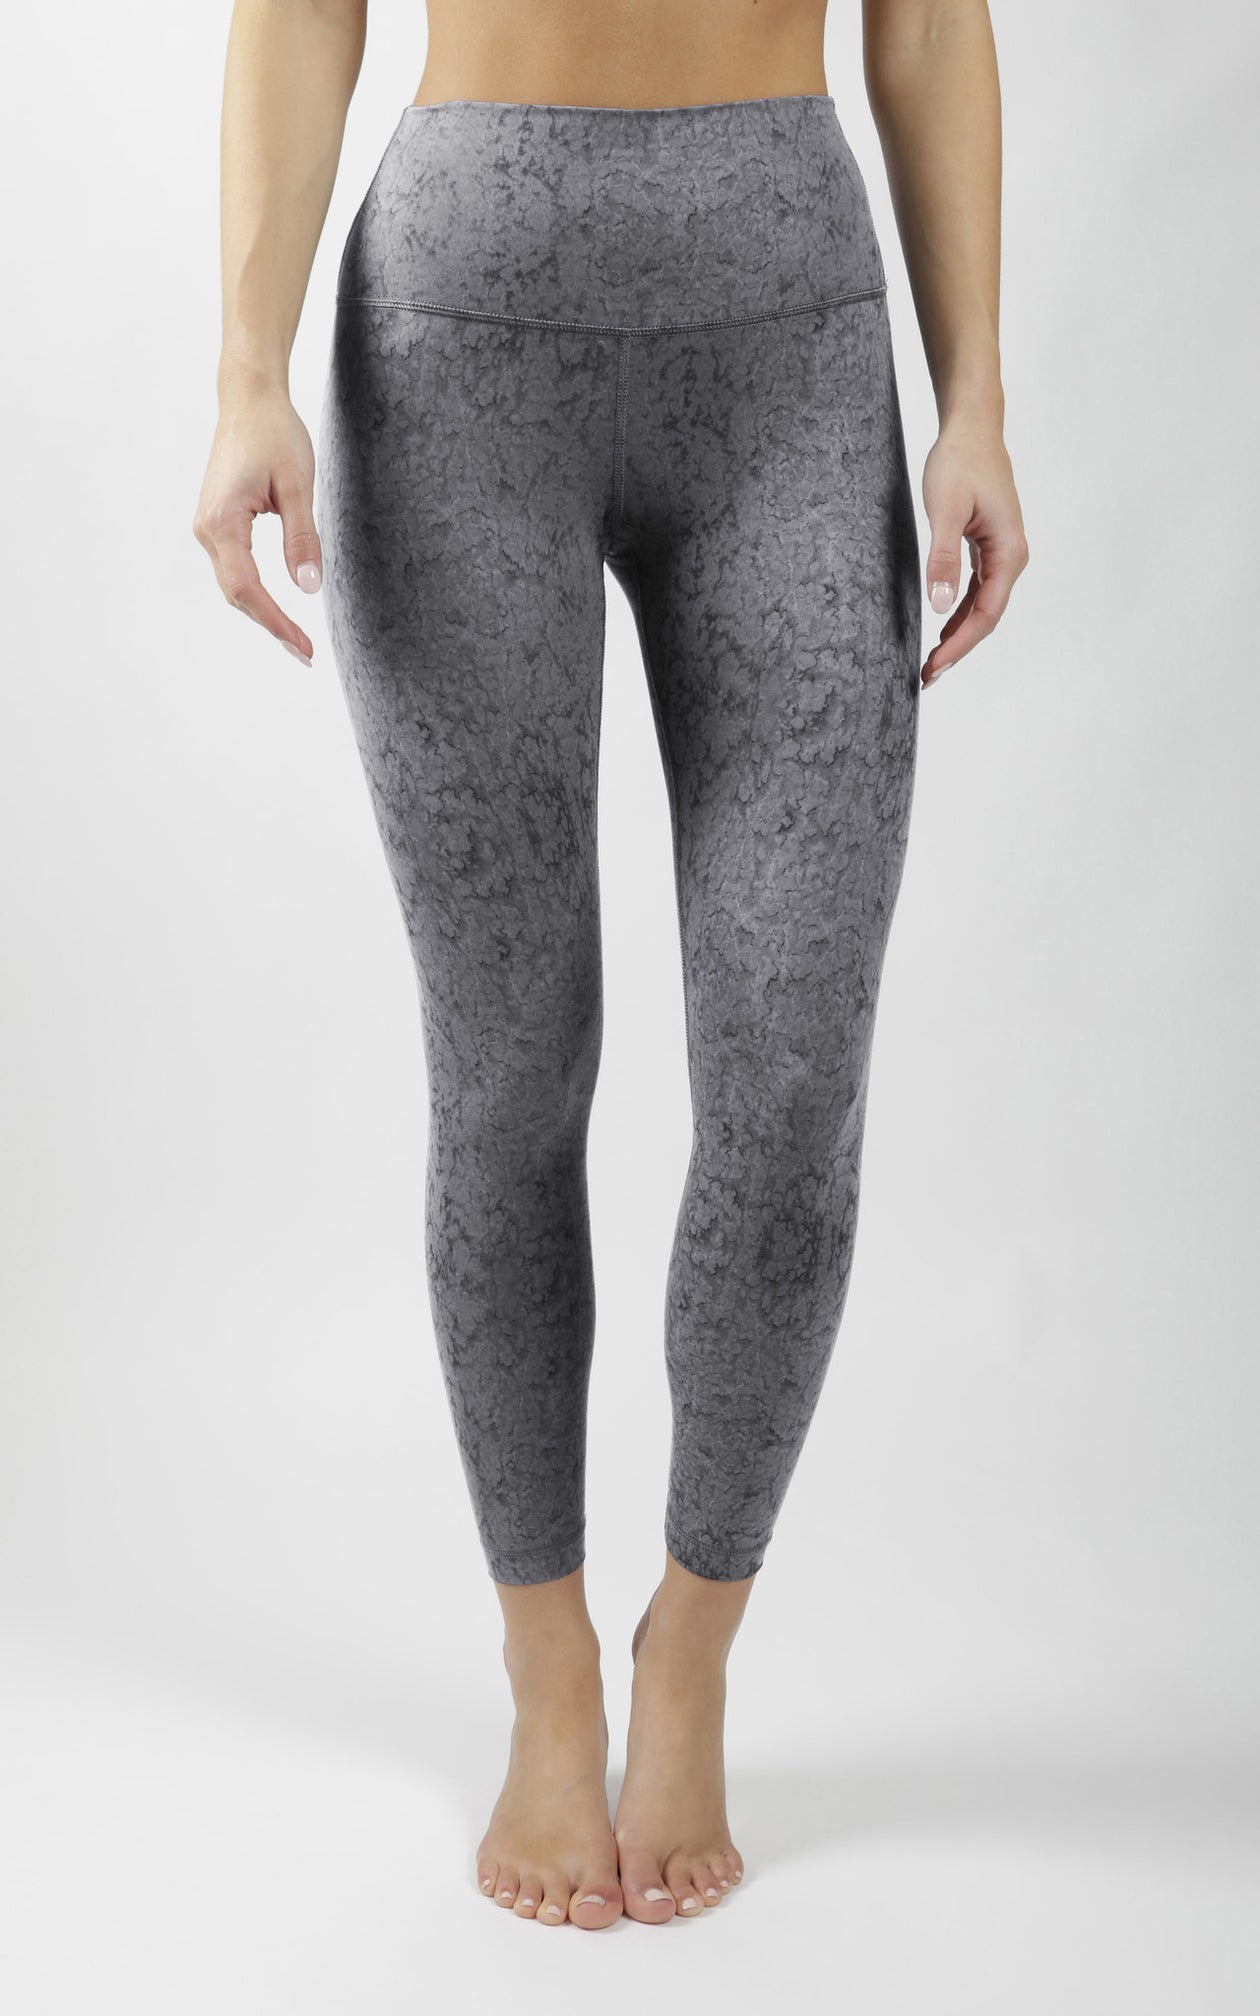 90 Degree by Reflex Leopard Print Black Gray Yoga Pants Size L